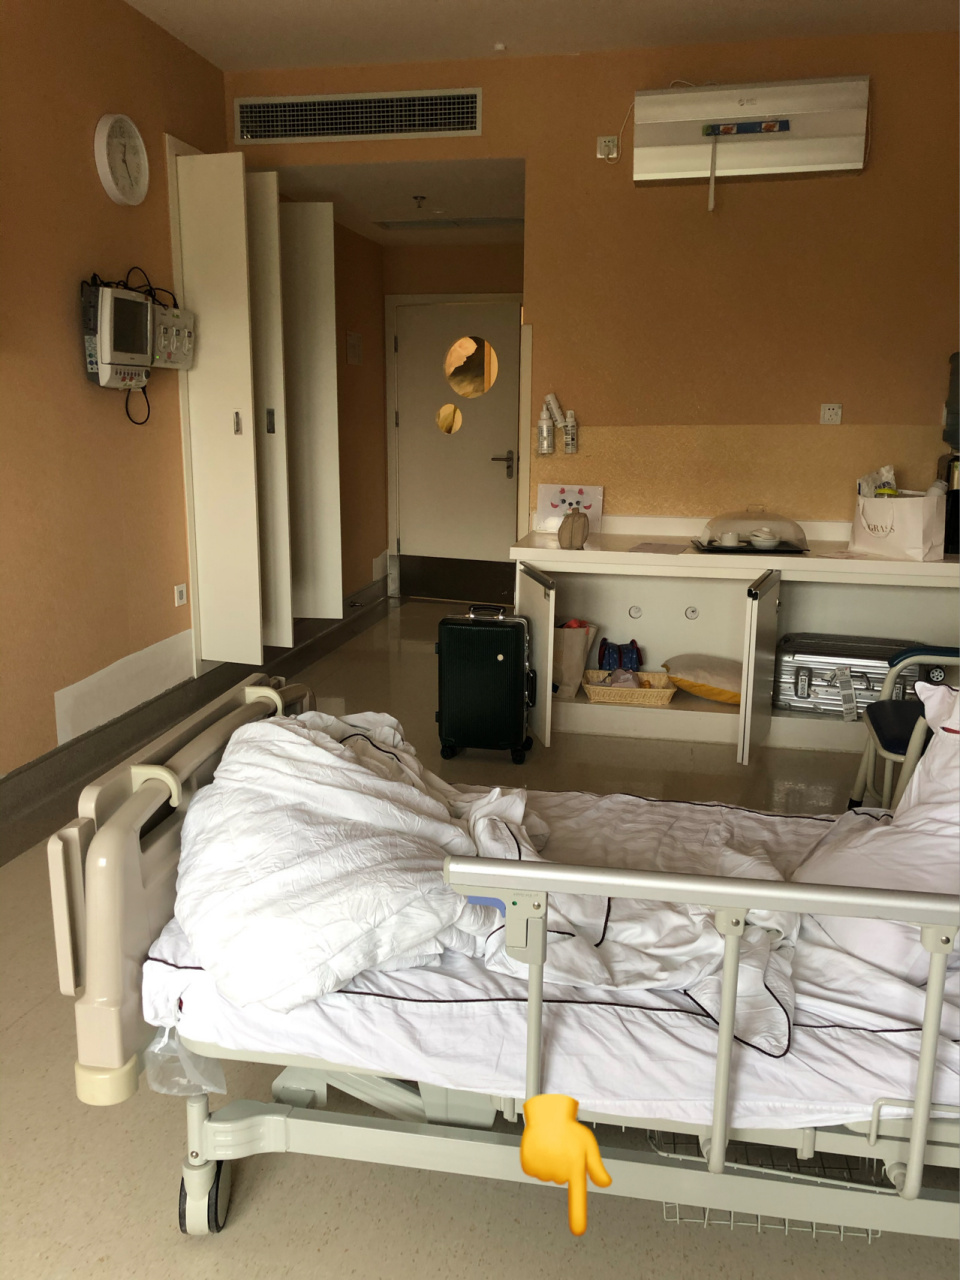 北京医院病房单间照片图片